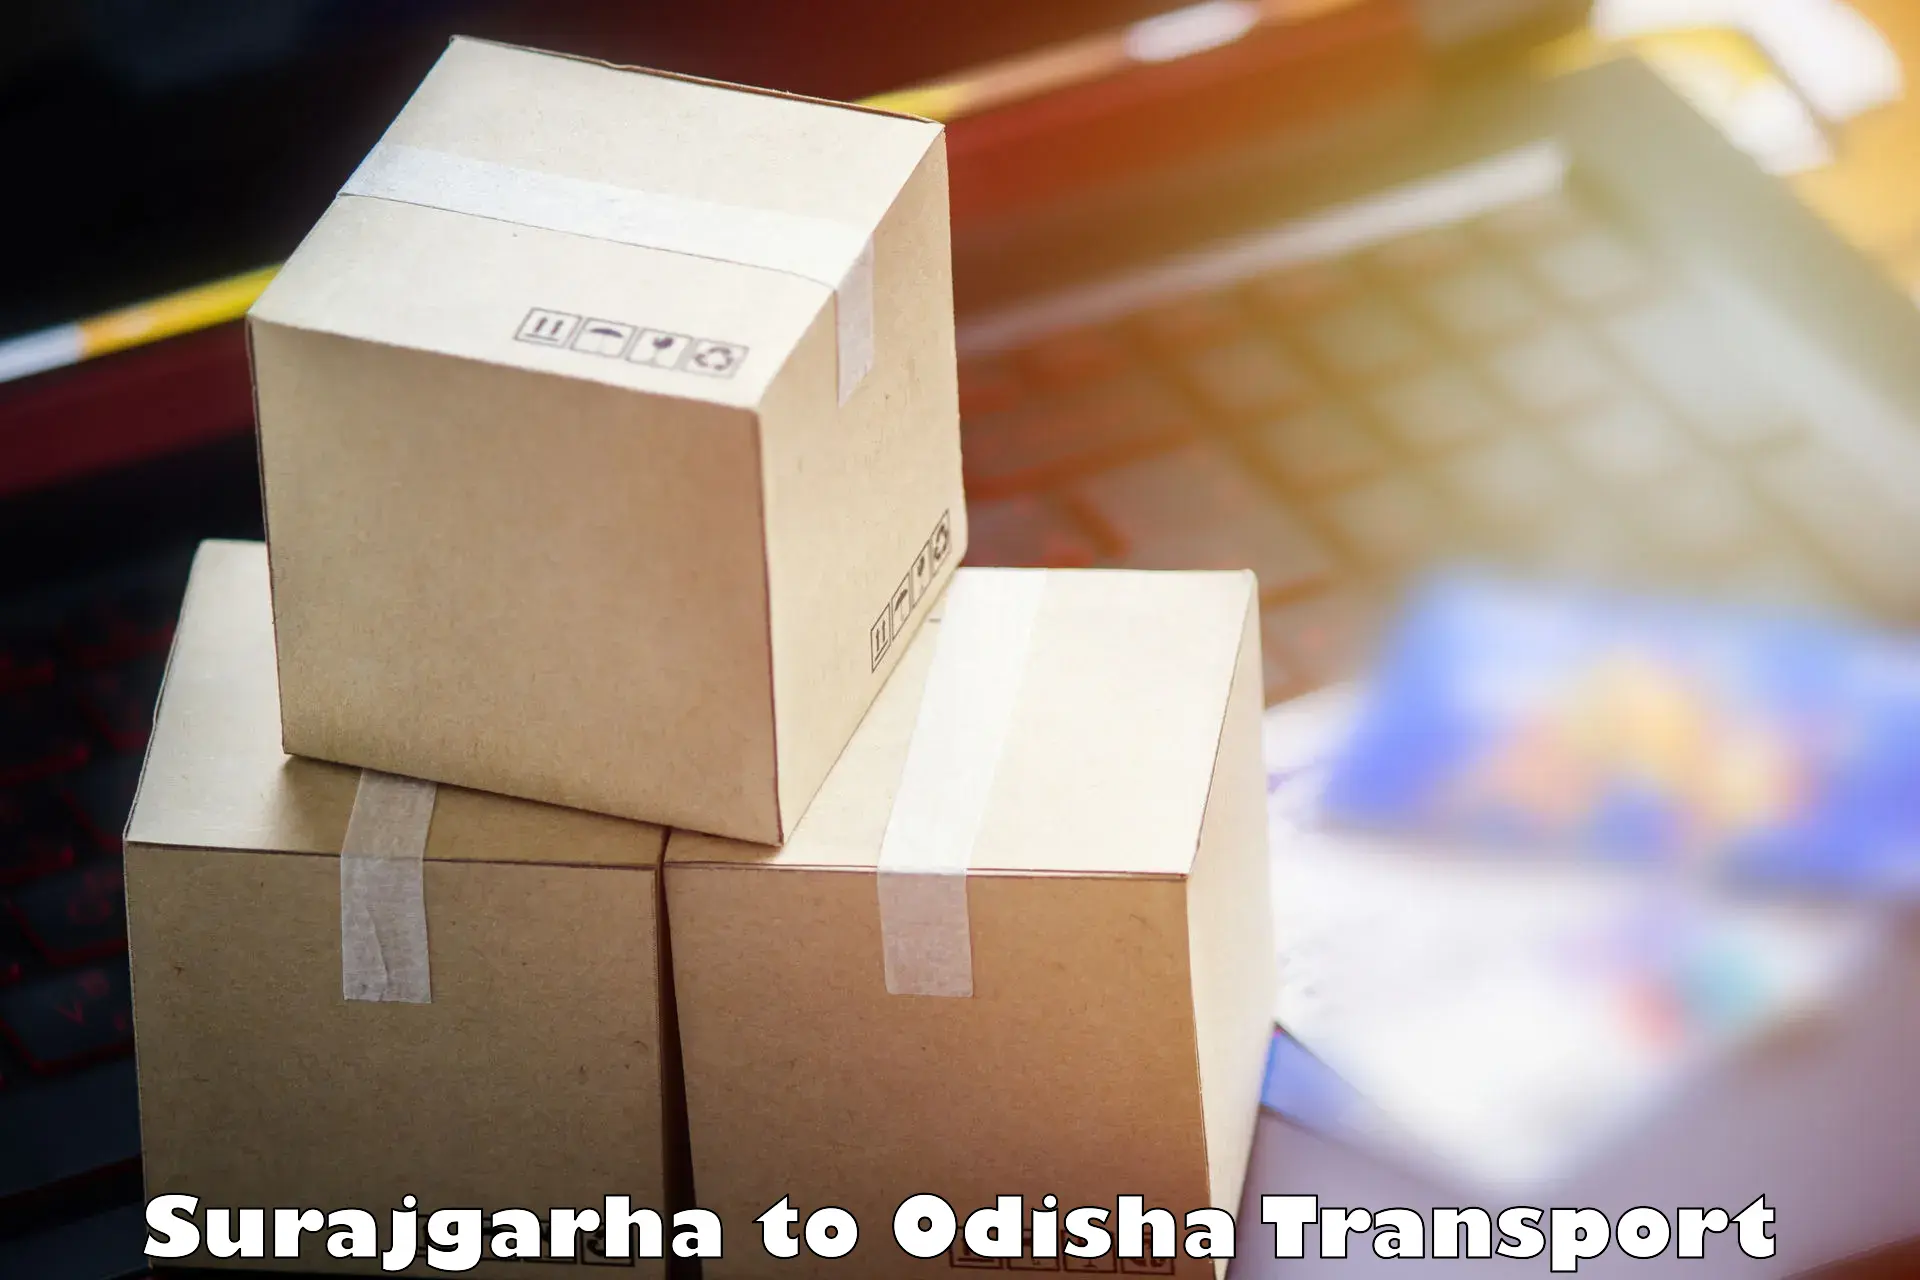 Shipping partner Surajgarha to Jashipur